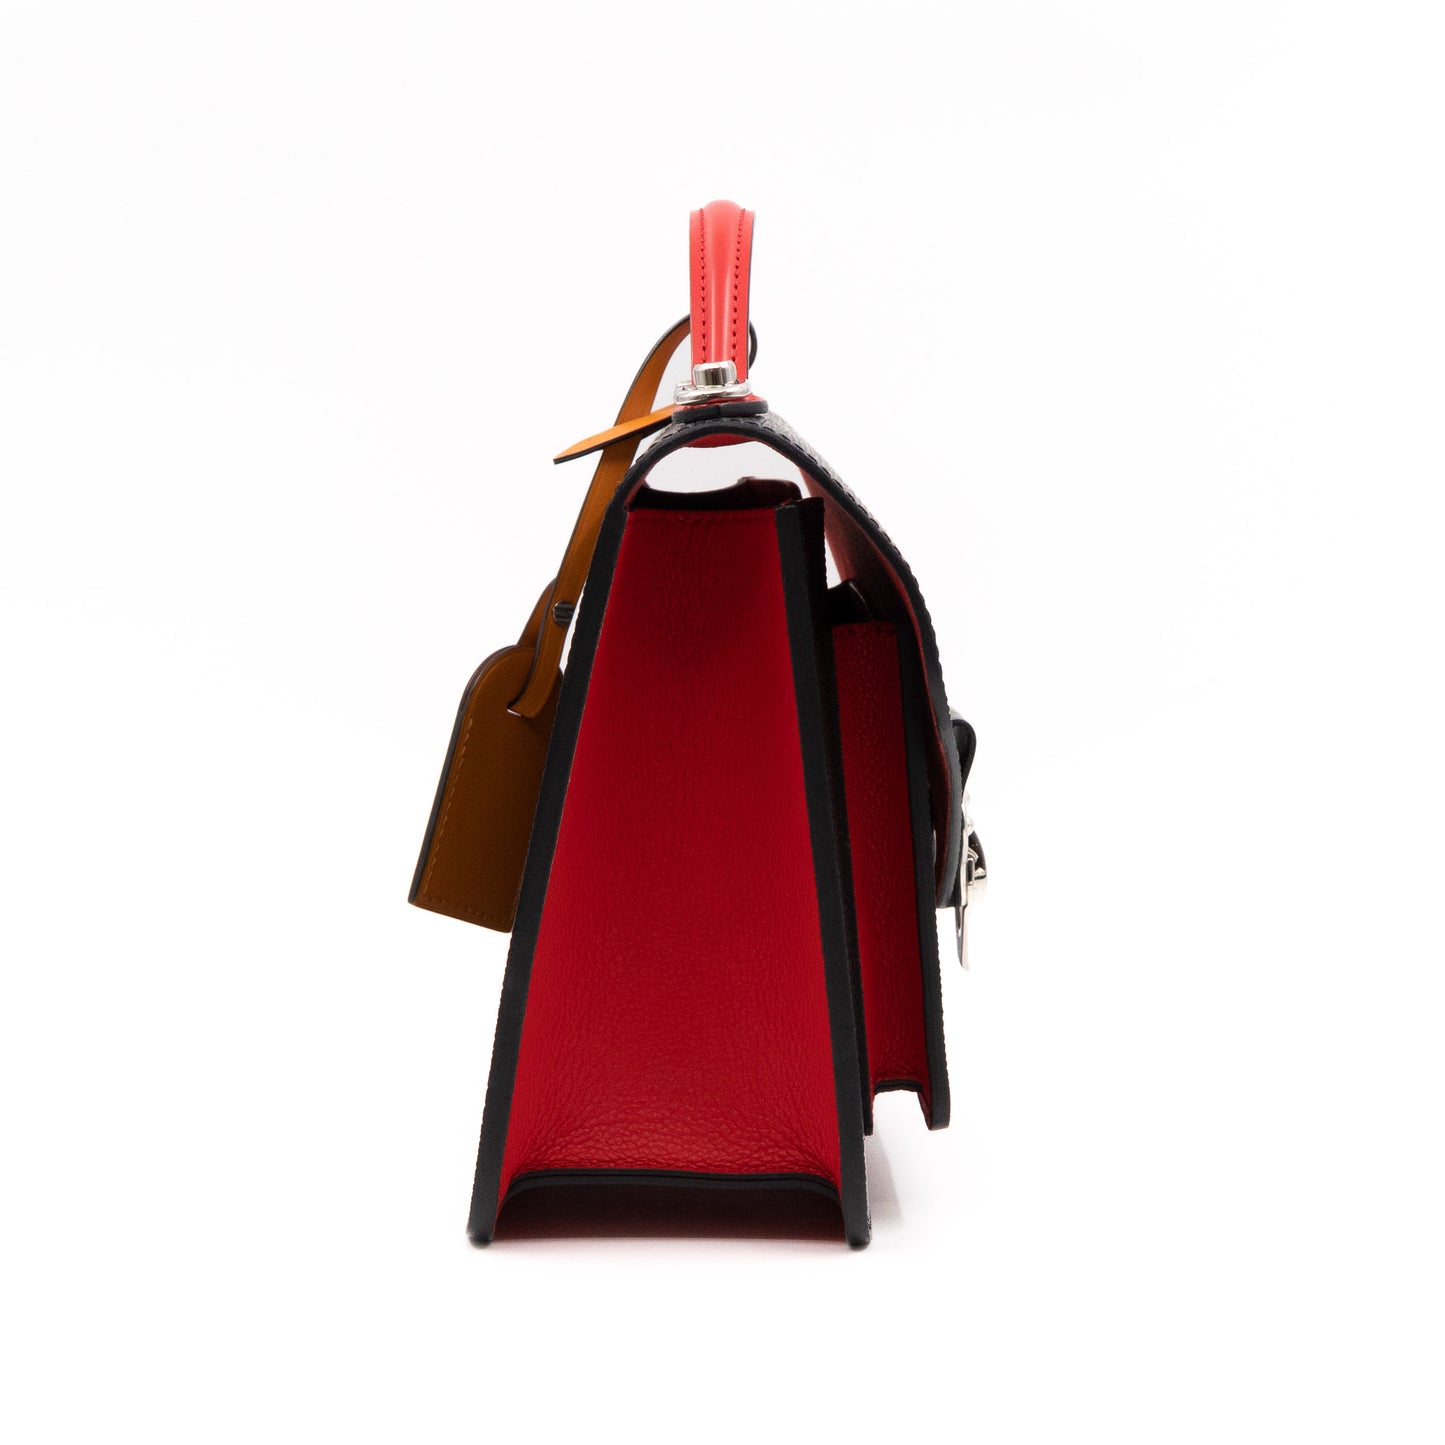 Louis Vuitton – Louis Vuitton Neo Monceau Epi Leather Black Red Blue –  Queen Station